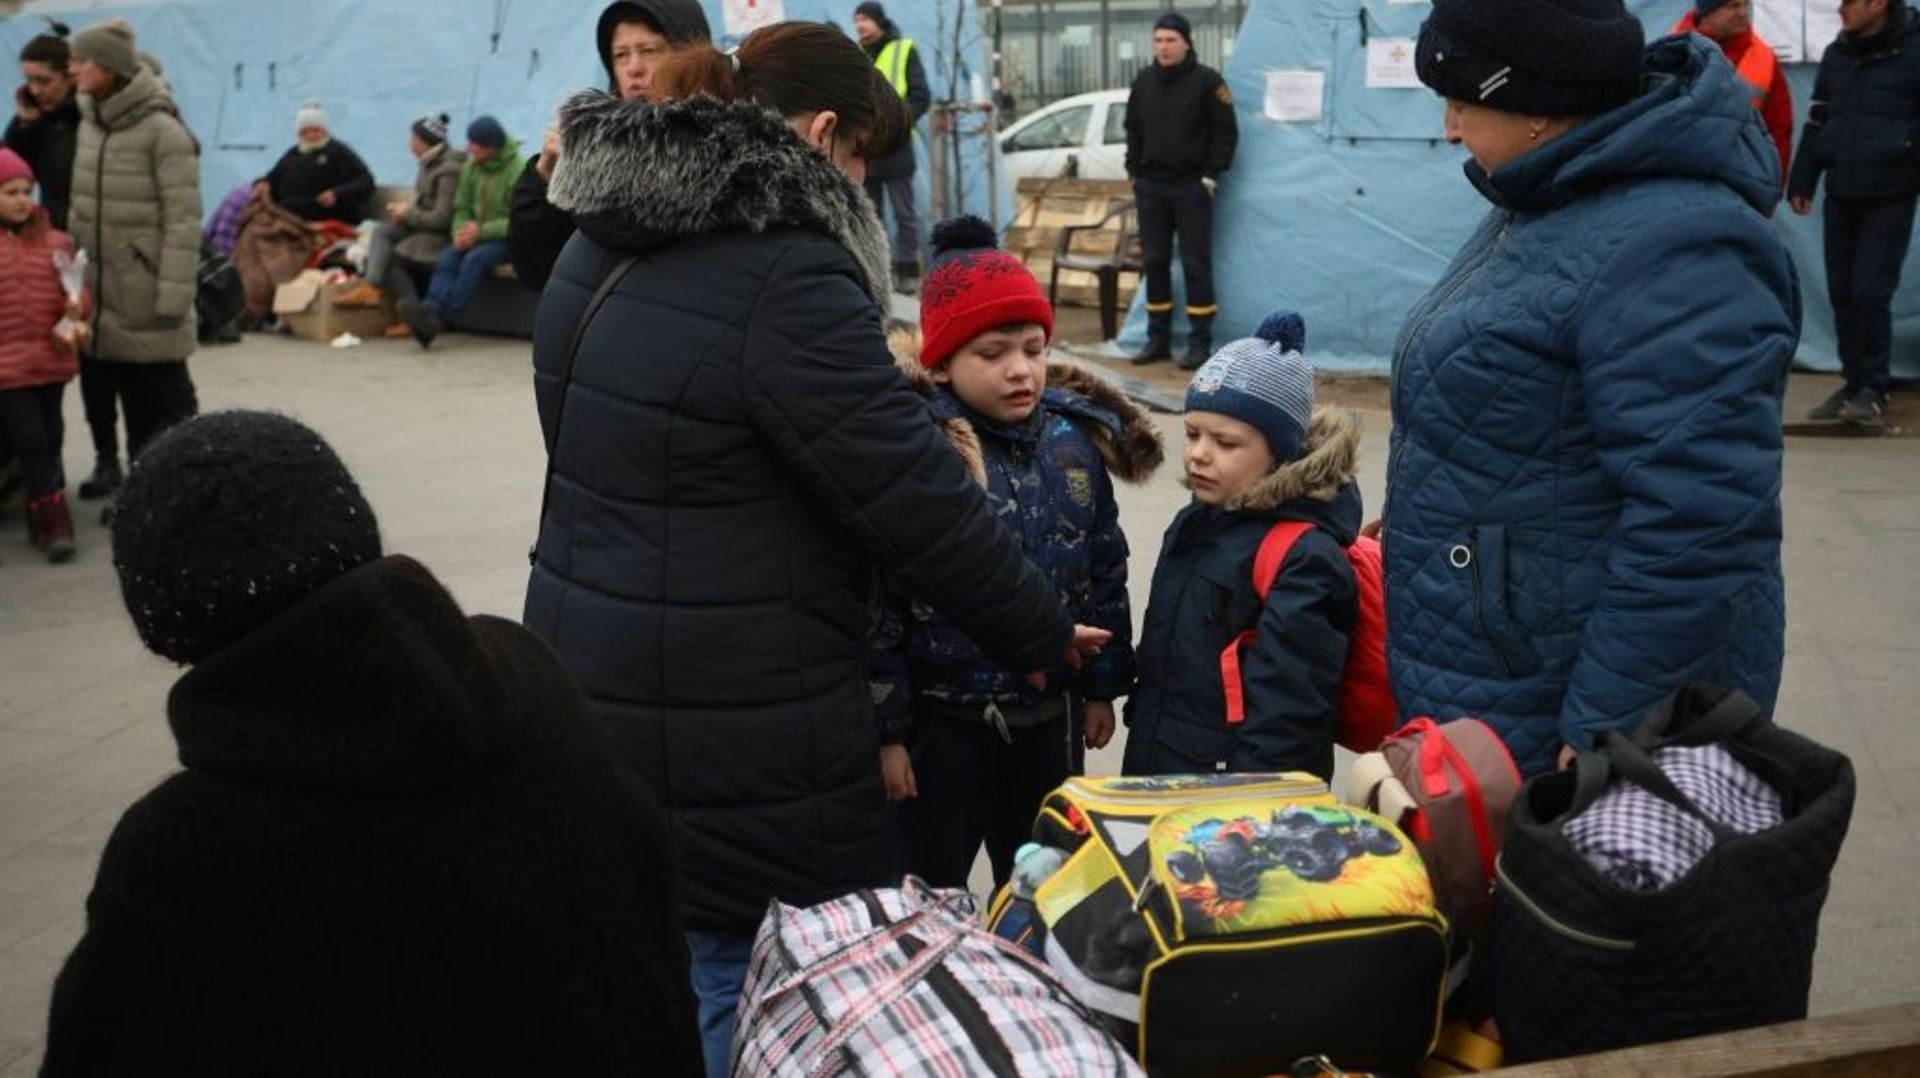 Des réfugiés qui avaient quitté l’Ukraine pour la Pologne mais ont finalement décidé de regagner leur pays arrivent à la gare de Lviv, dans l’Ouest d l’Ukraine, le 16 mars 2022